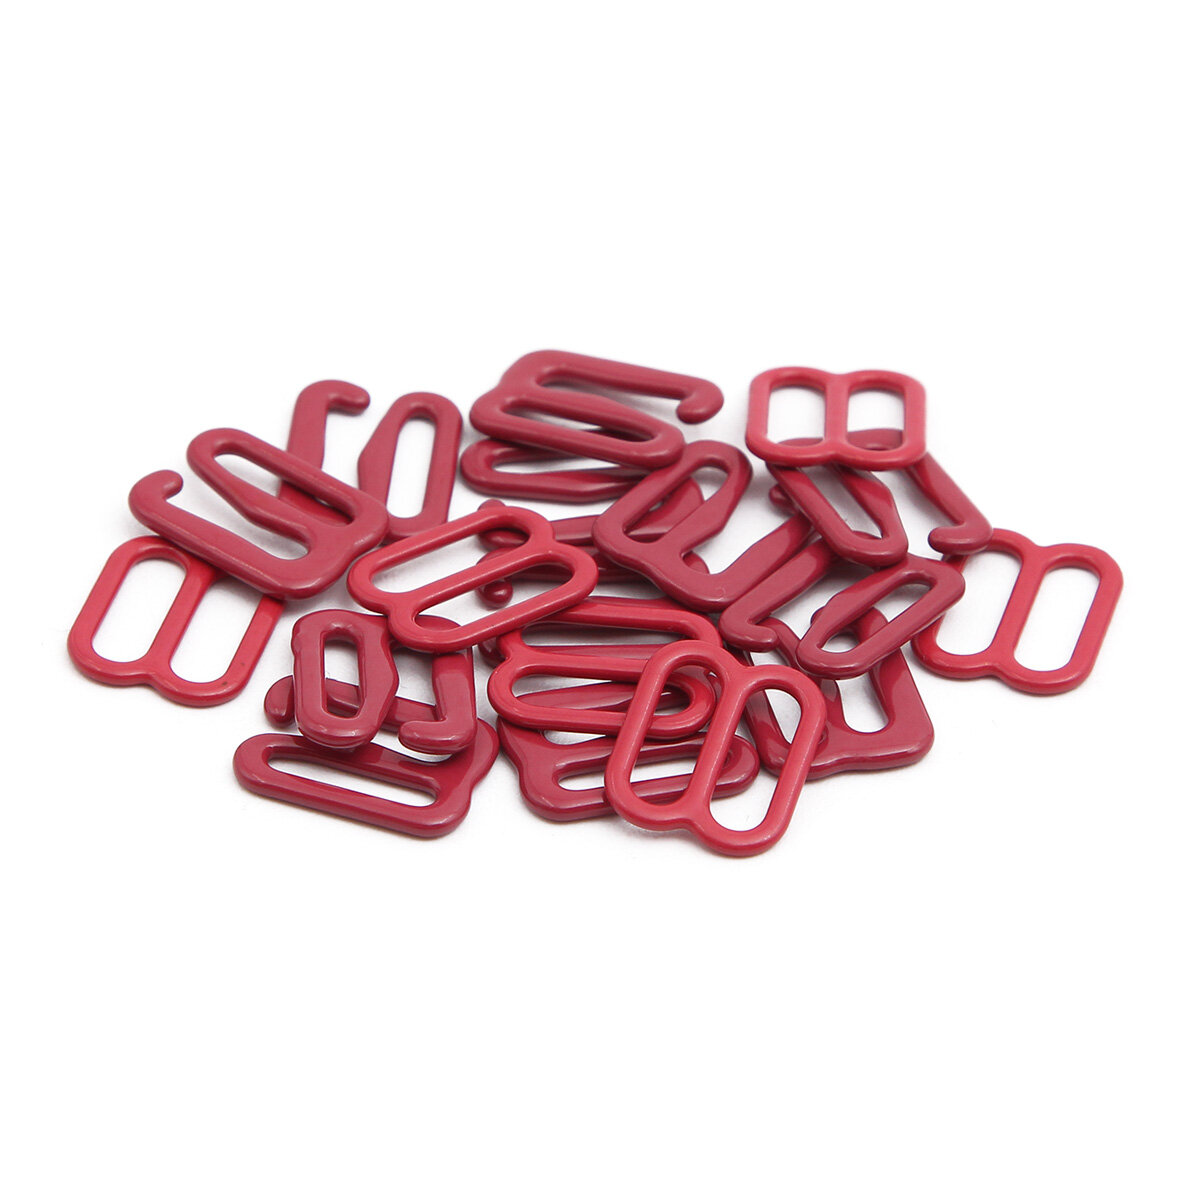 Крючки и регуляторы для бретелей бюстгальтера, 10 мм, металл, эмаль (темно-красный), 18 шт